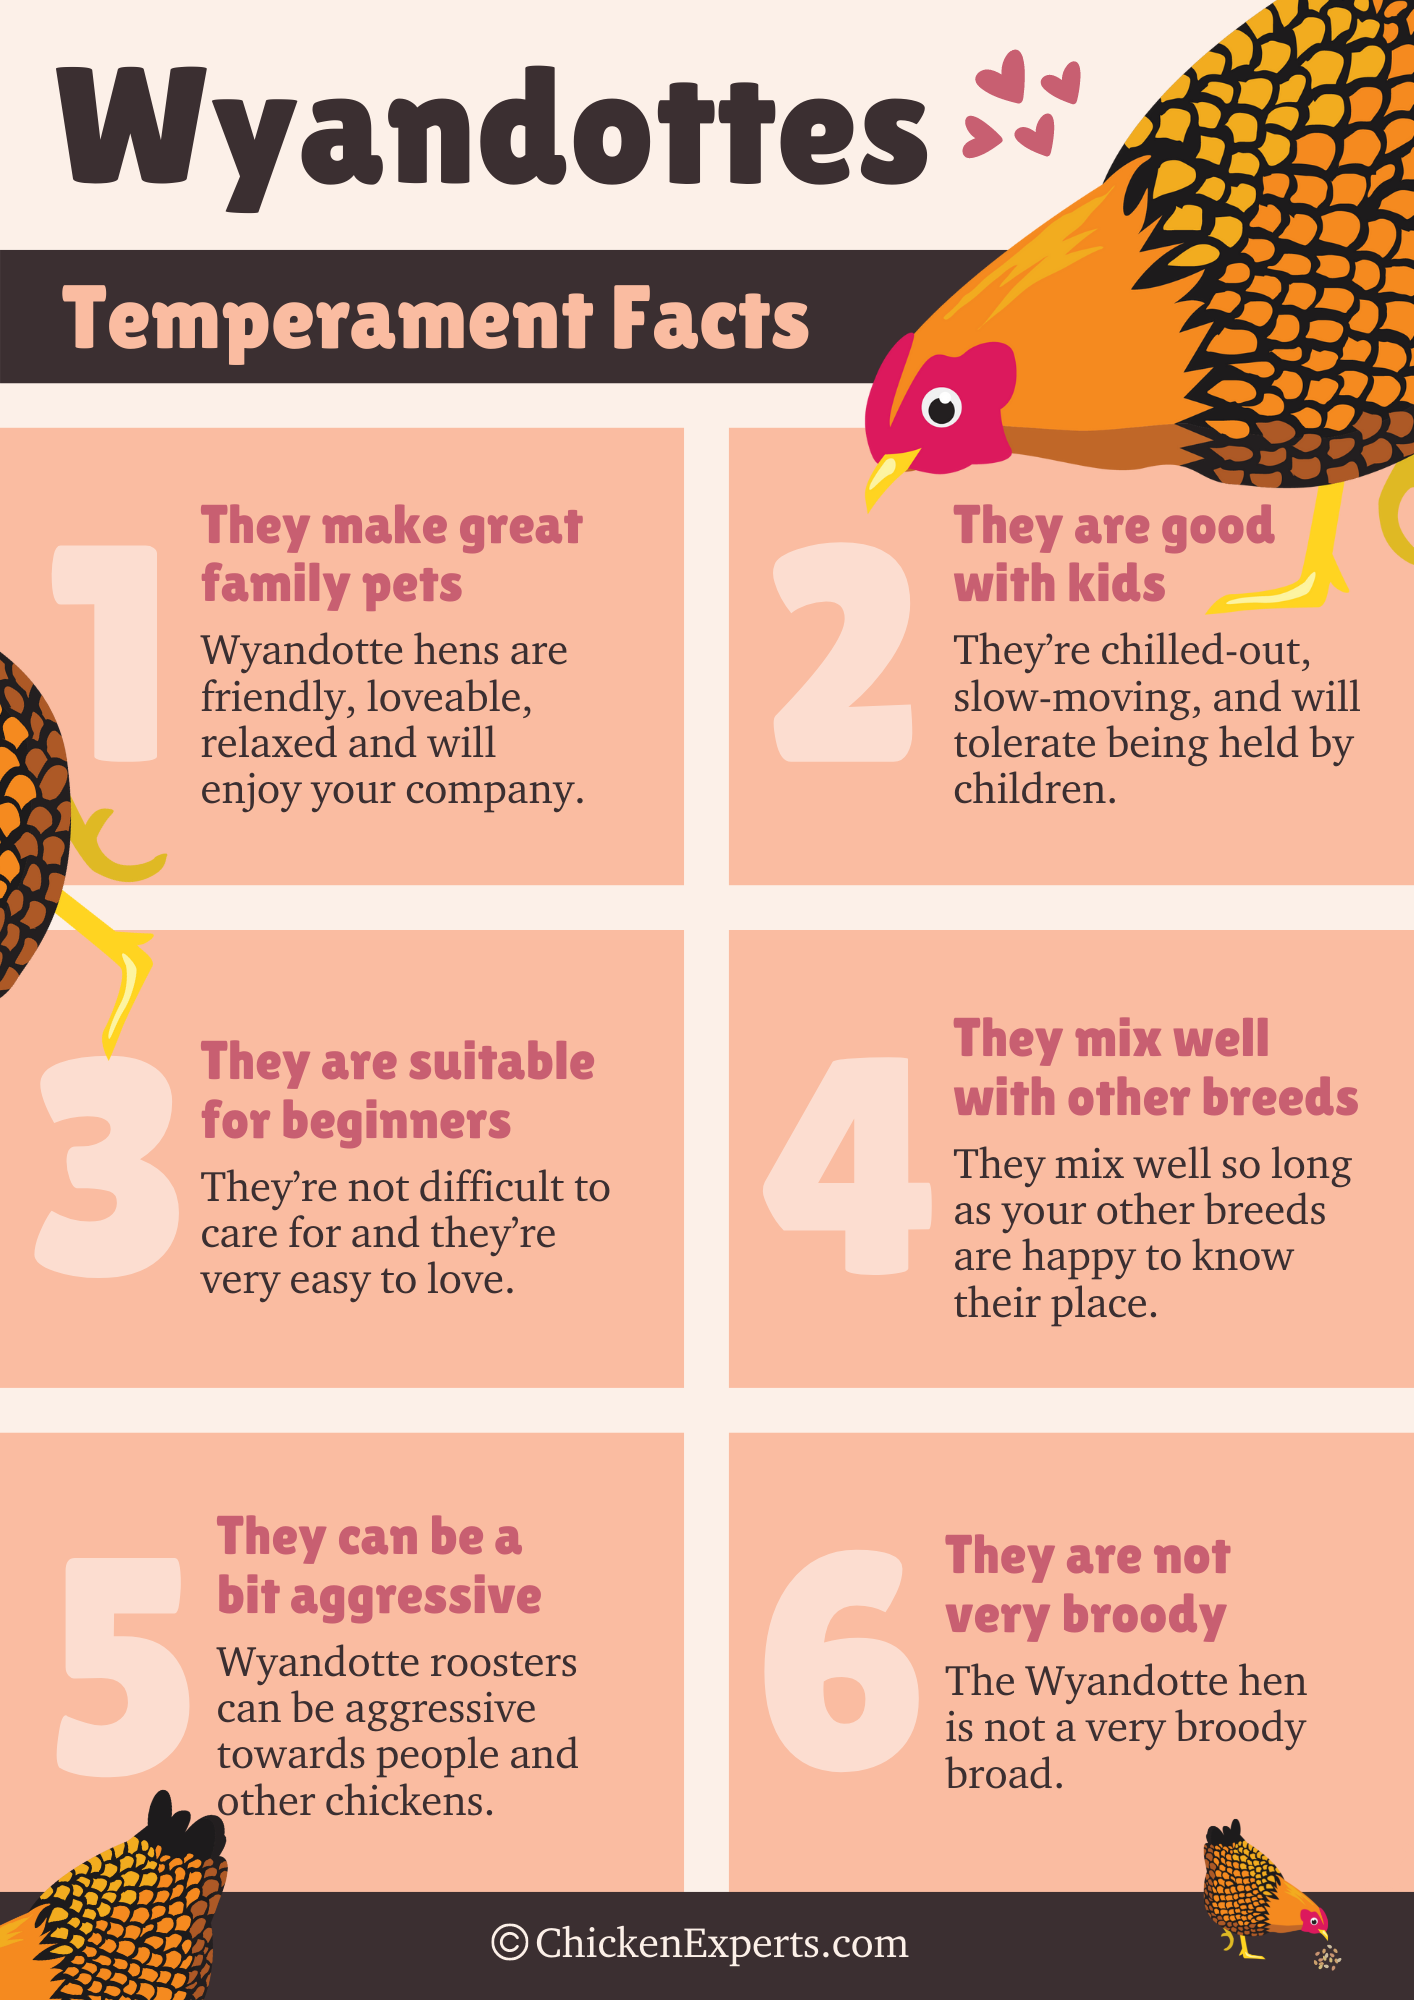 wyandotte chicken breed temperament facts